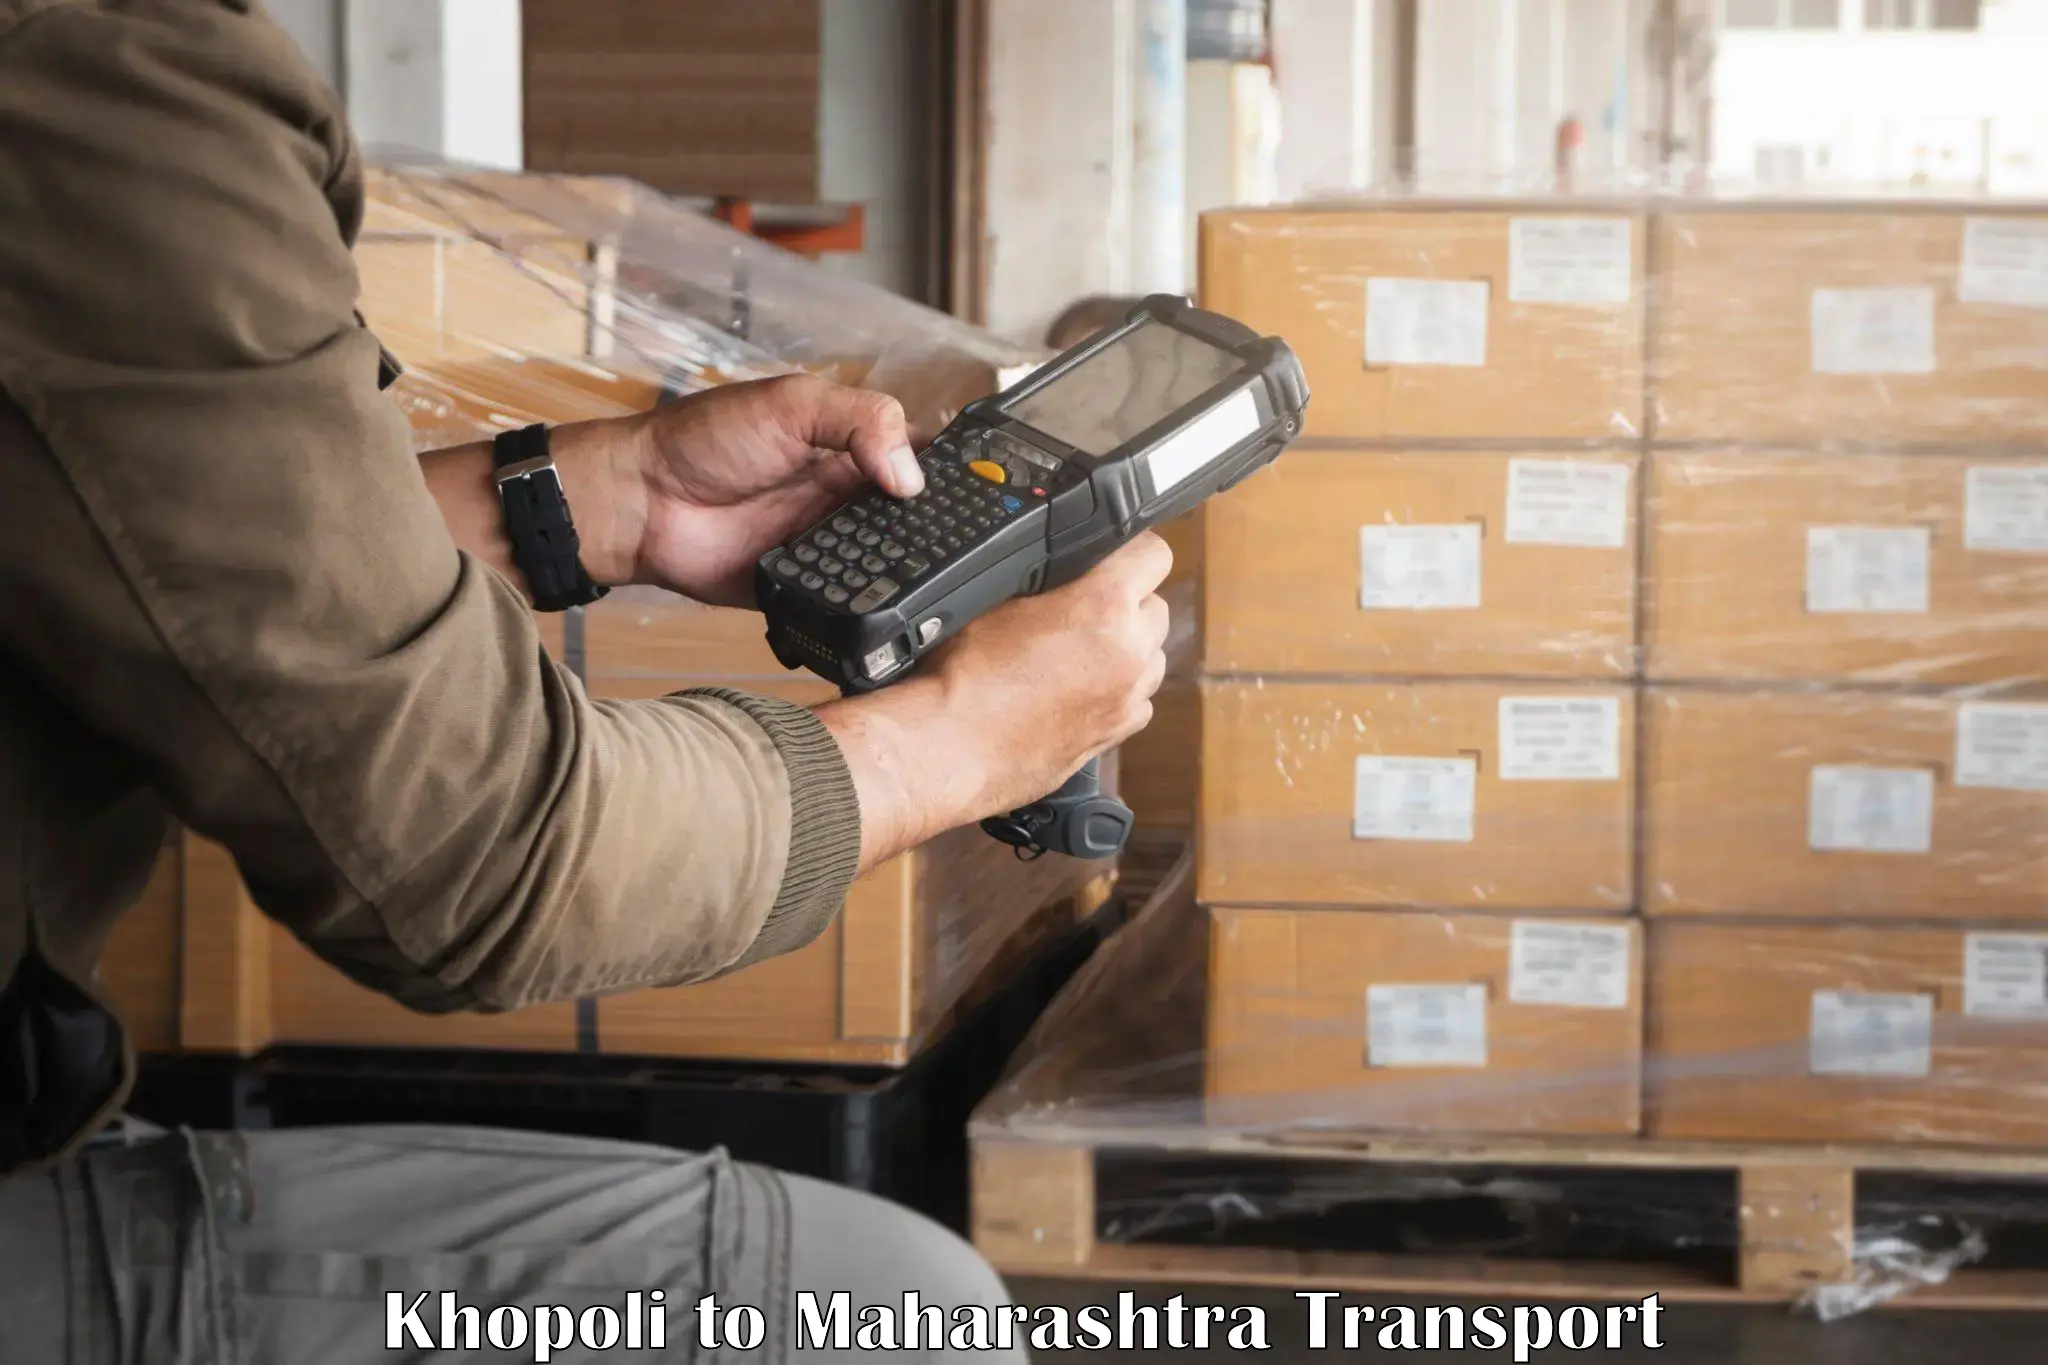 Pick up transport service Khopoli to Maharashtra